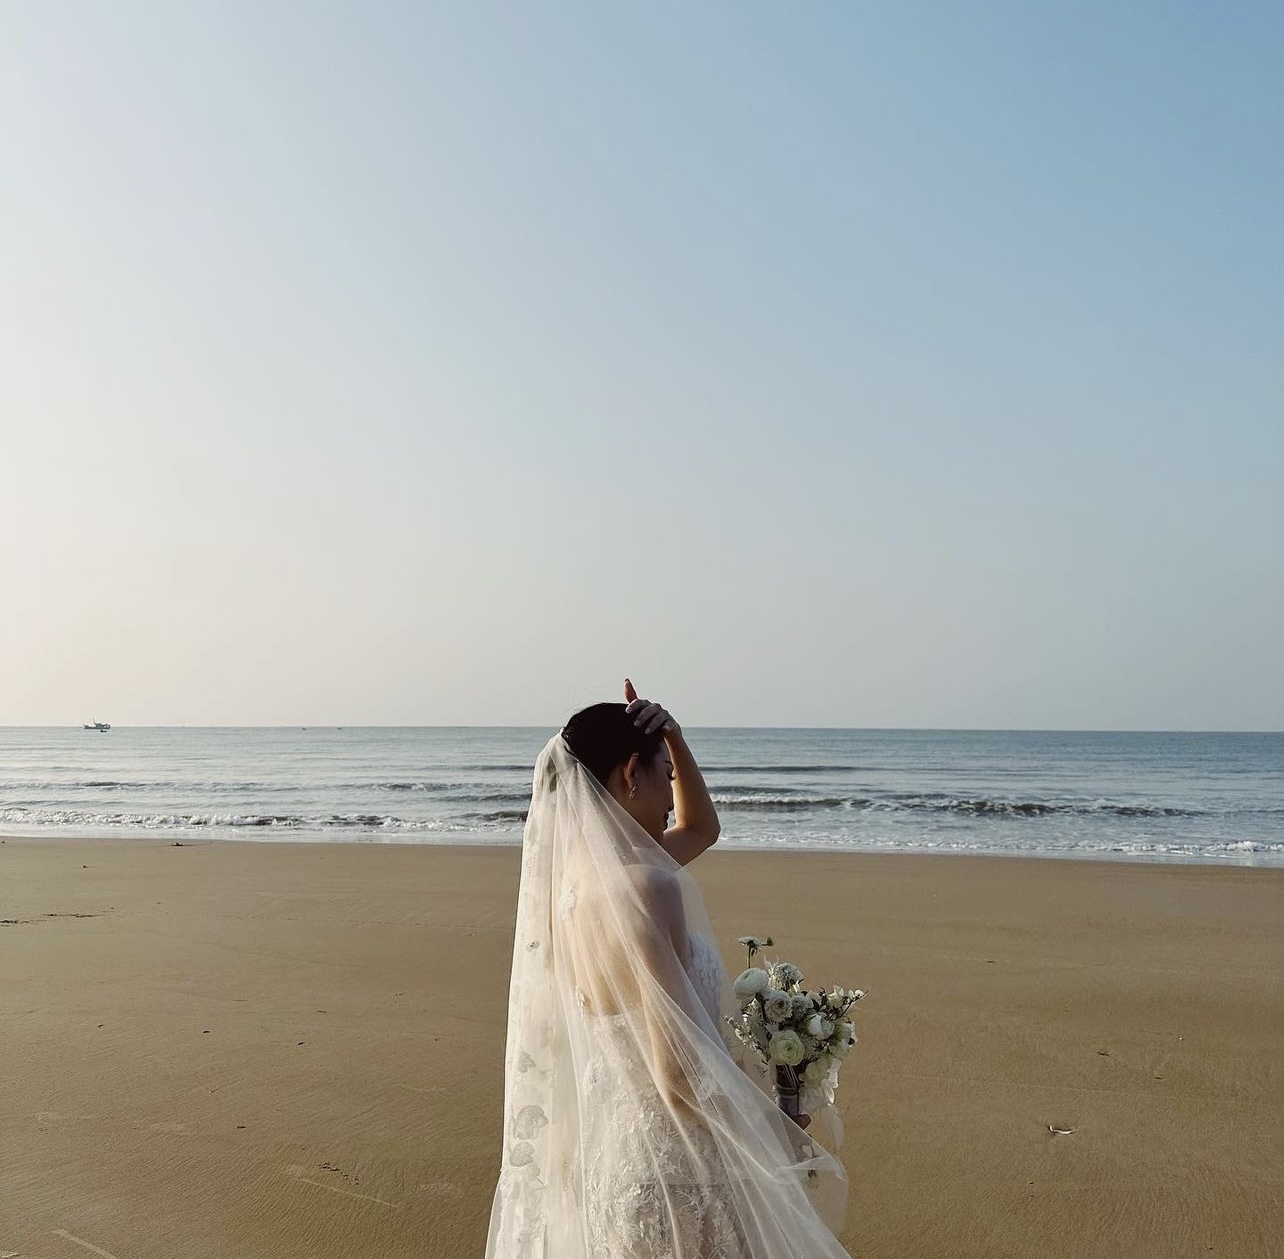 Linh Rin hé lộ ảnh cưới trên bãi biển bên bạn trai doanh nhân - Ảnh 1.